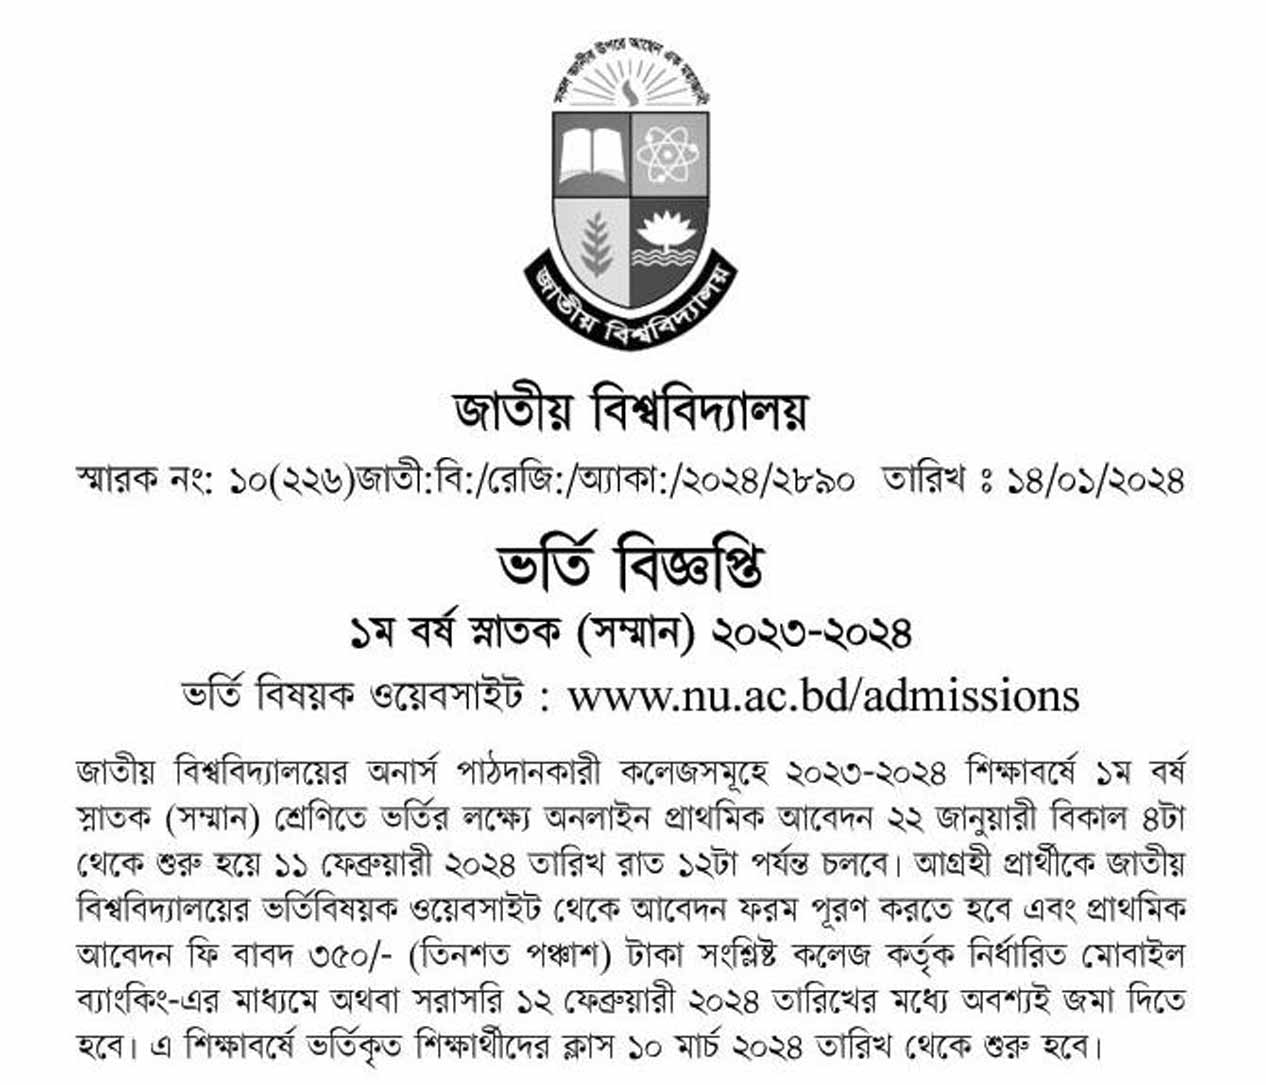 National University Admission